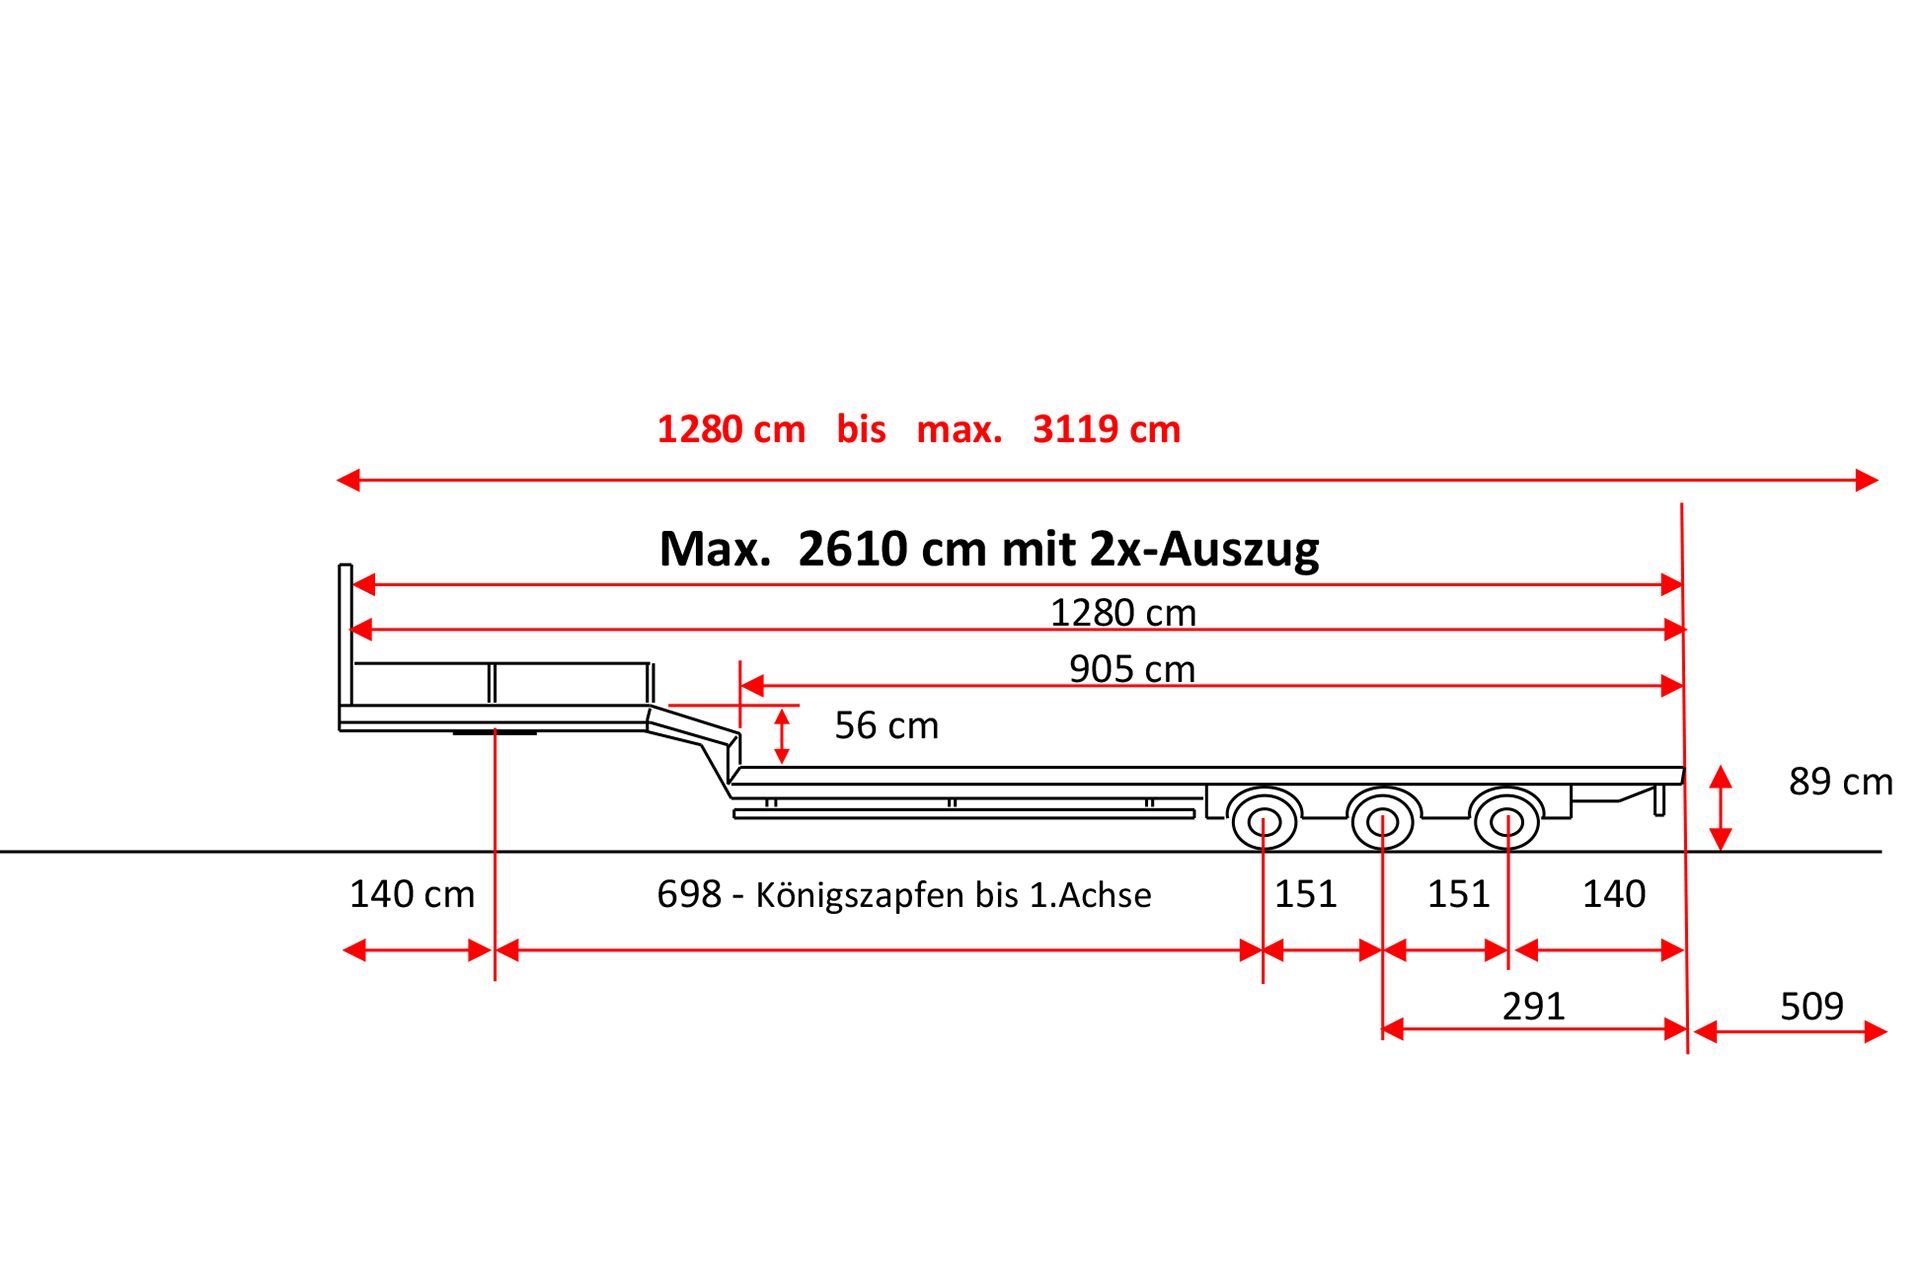 Skizze eines Semisattelaufliegers mit 3-Achsen und Doppel-Tele